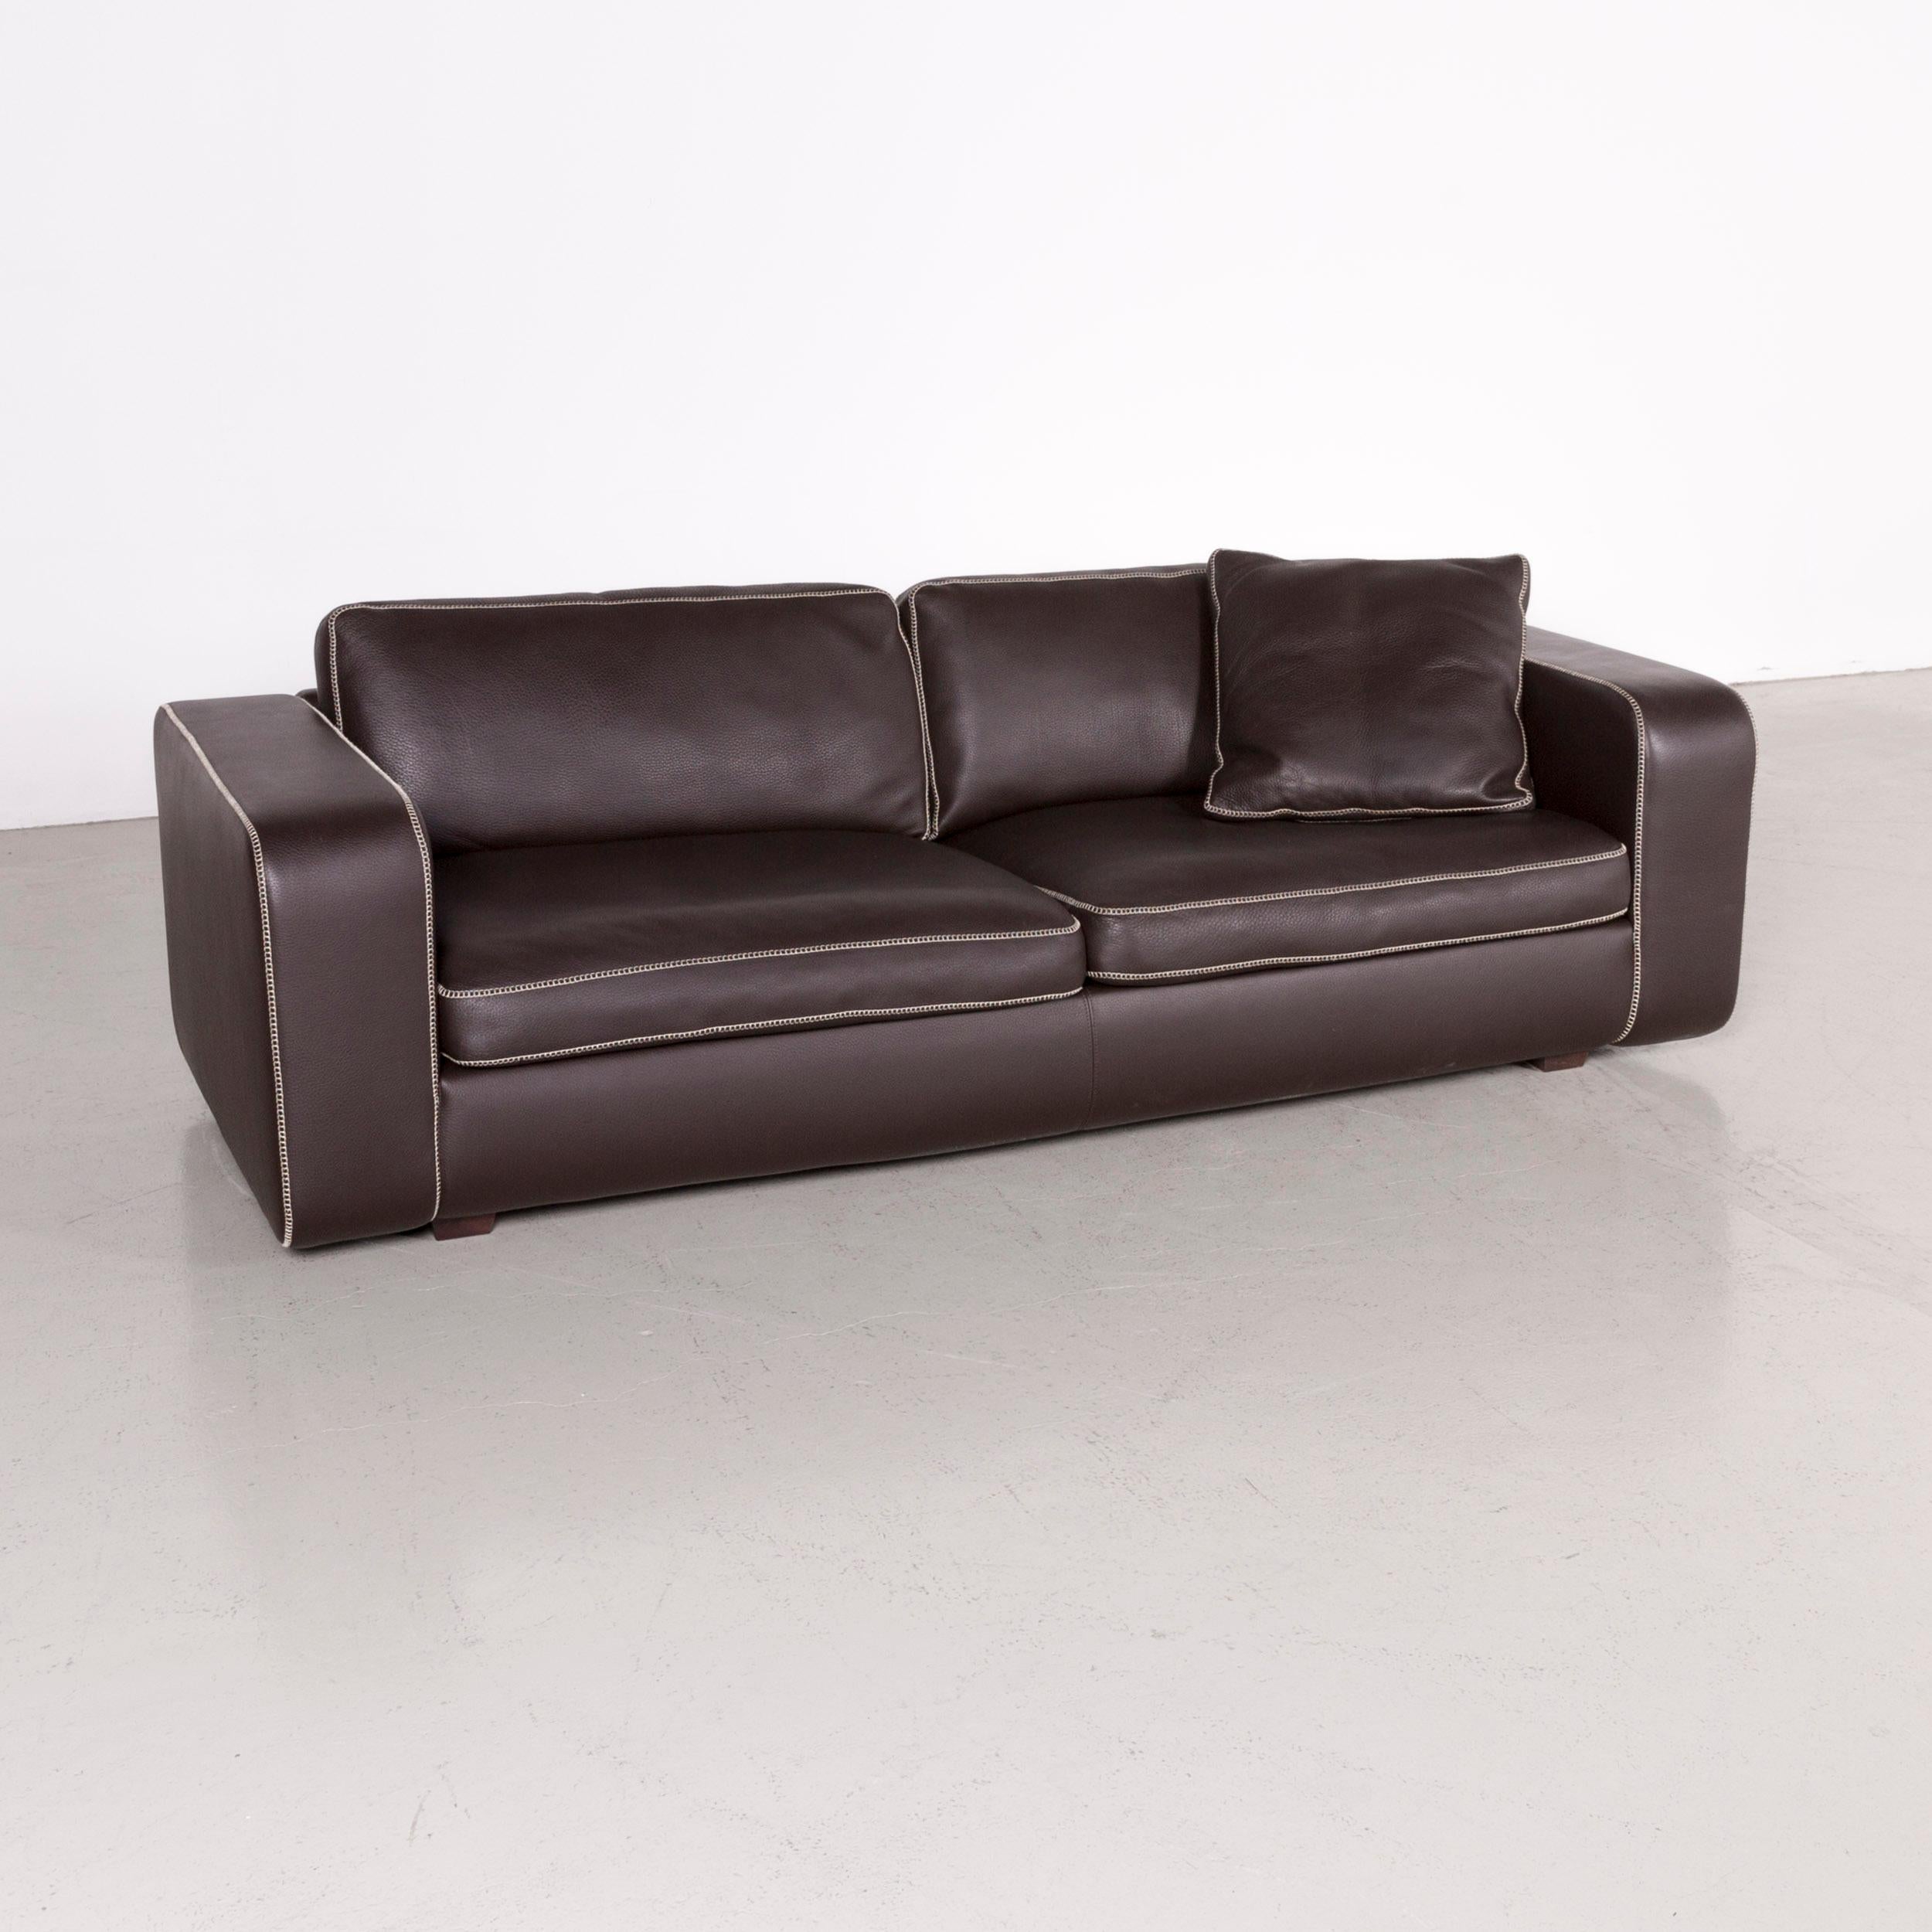 Machalke Valentino designer leather sofa brown three-seat couch.